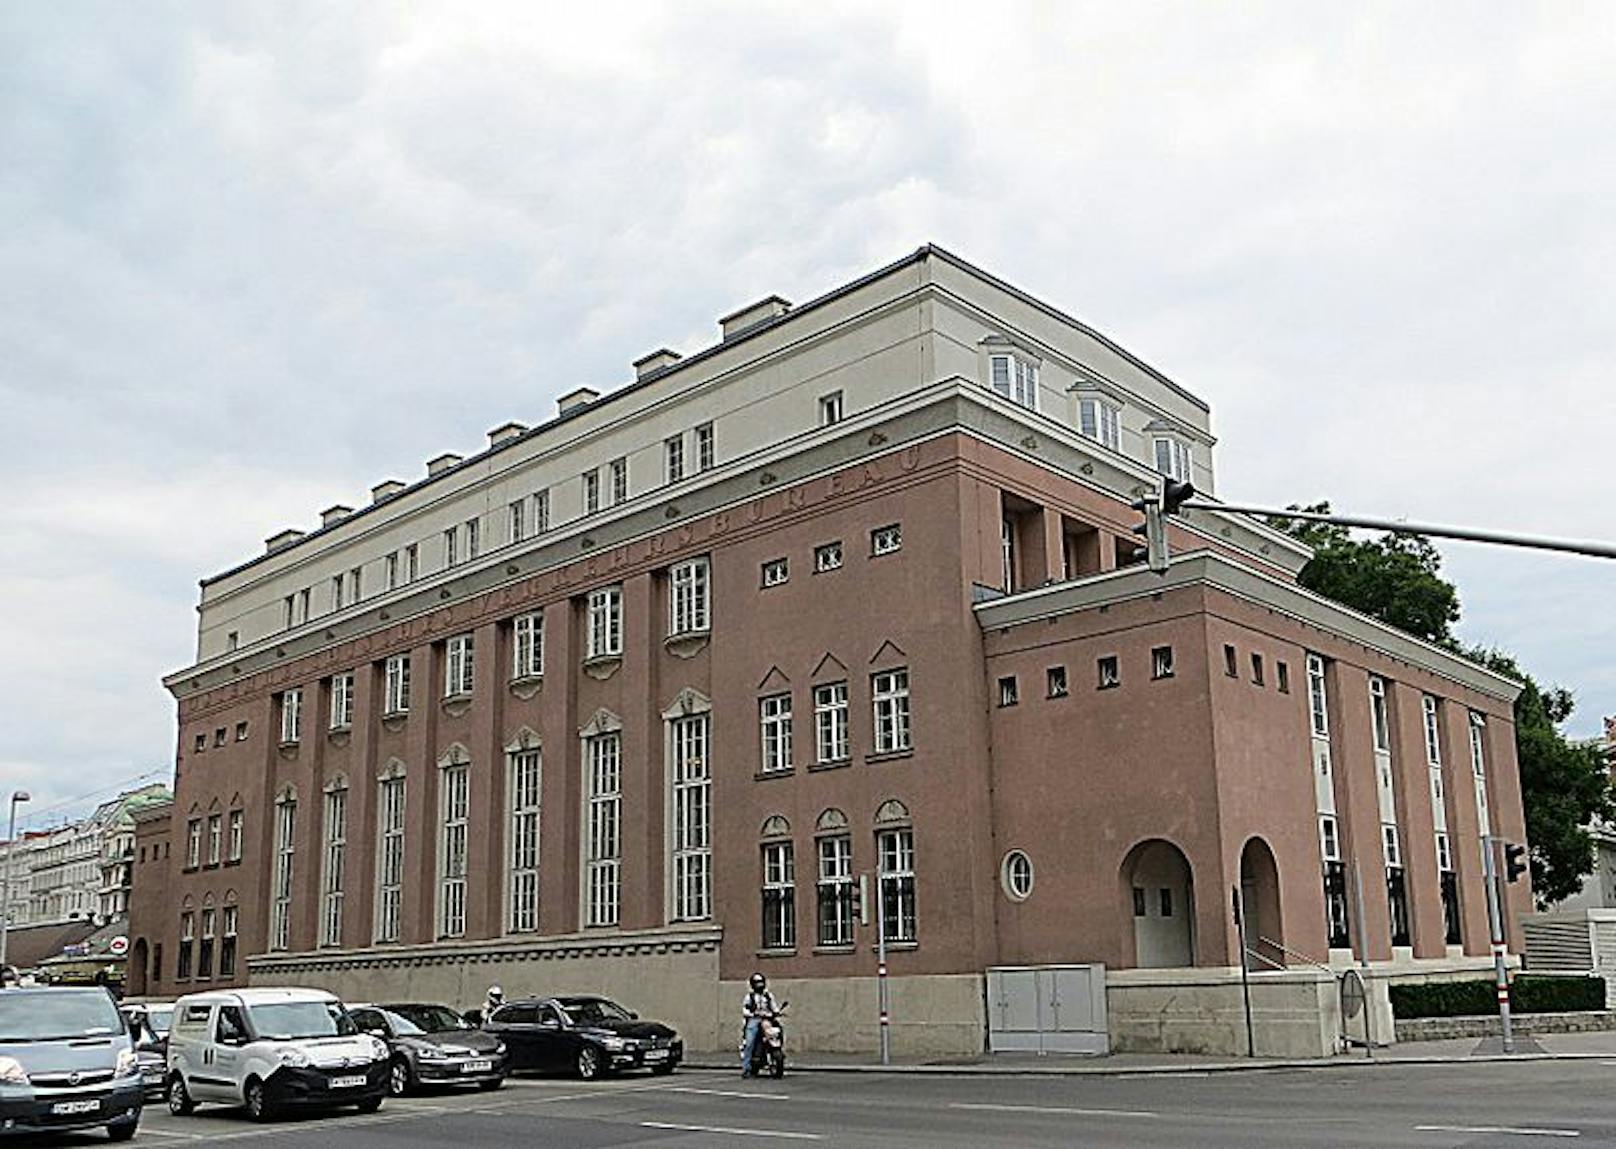 So sah das frühere Verkehrsbüro und spätere Novomatic Forum bisher aus. Die zweifärbige Fassade des denkmalgeschützten Gebäudes aus den 1920er-Jahren ist für das Bundesdenkmalamt ein "bestimmendes Charakteristikum".